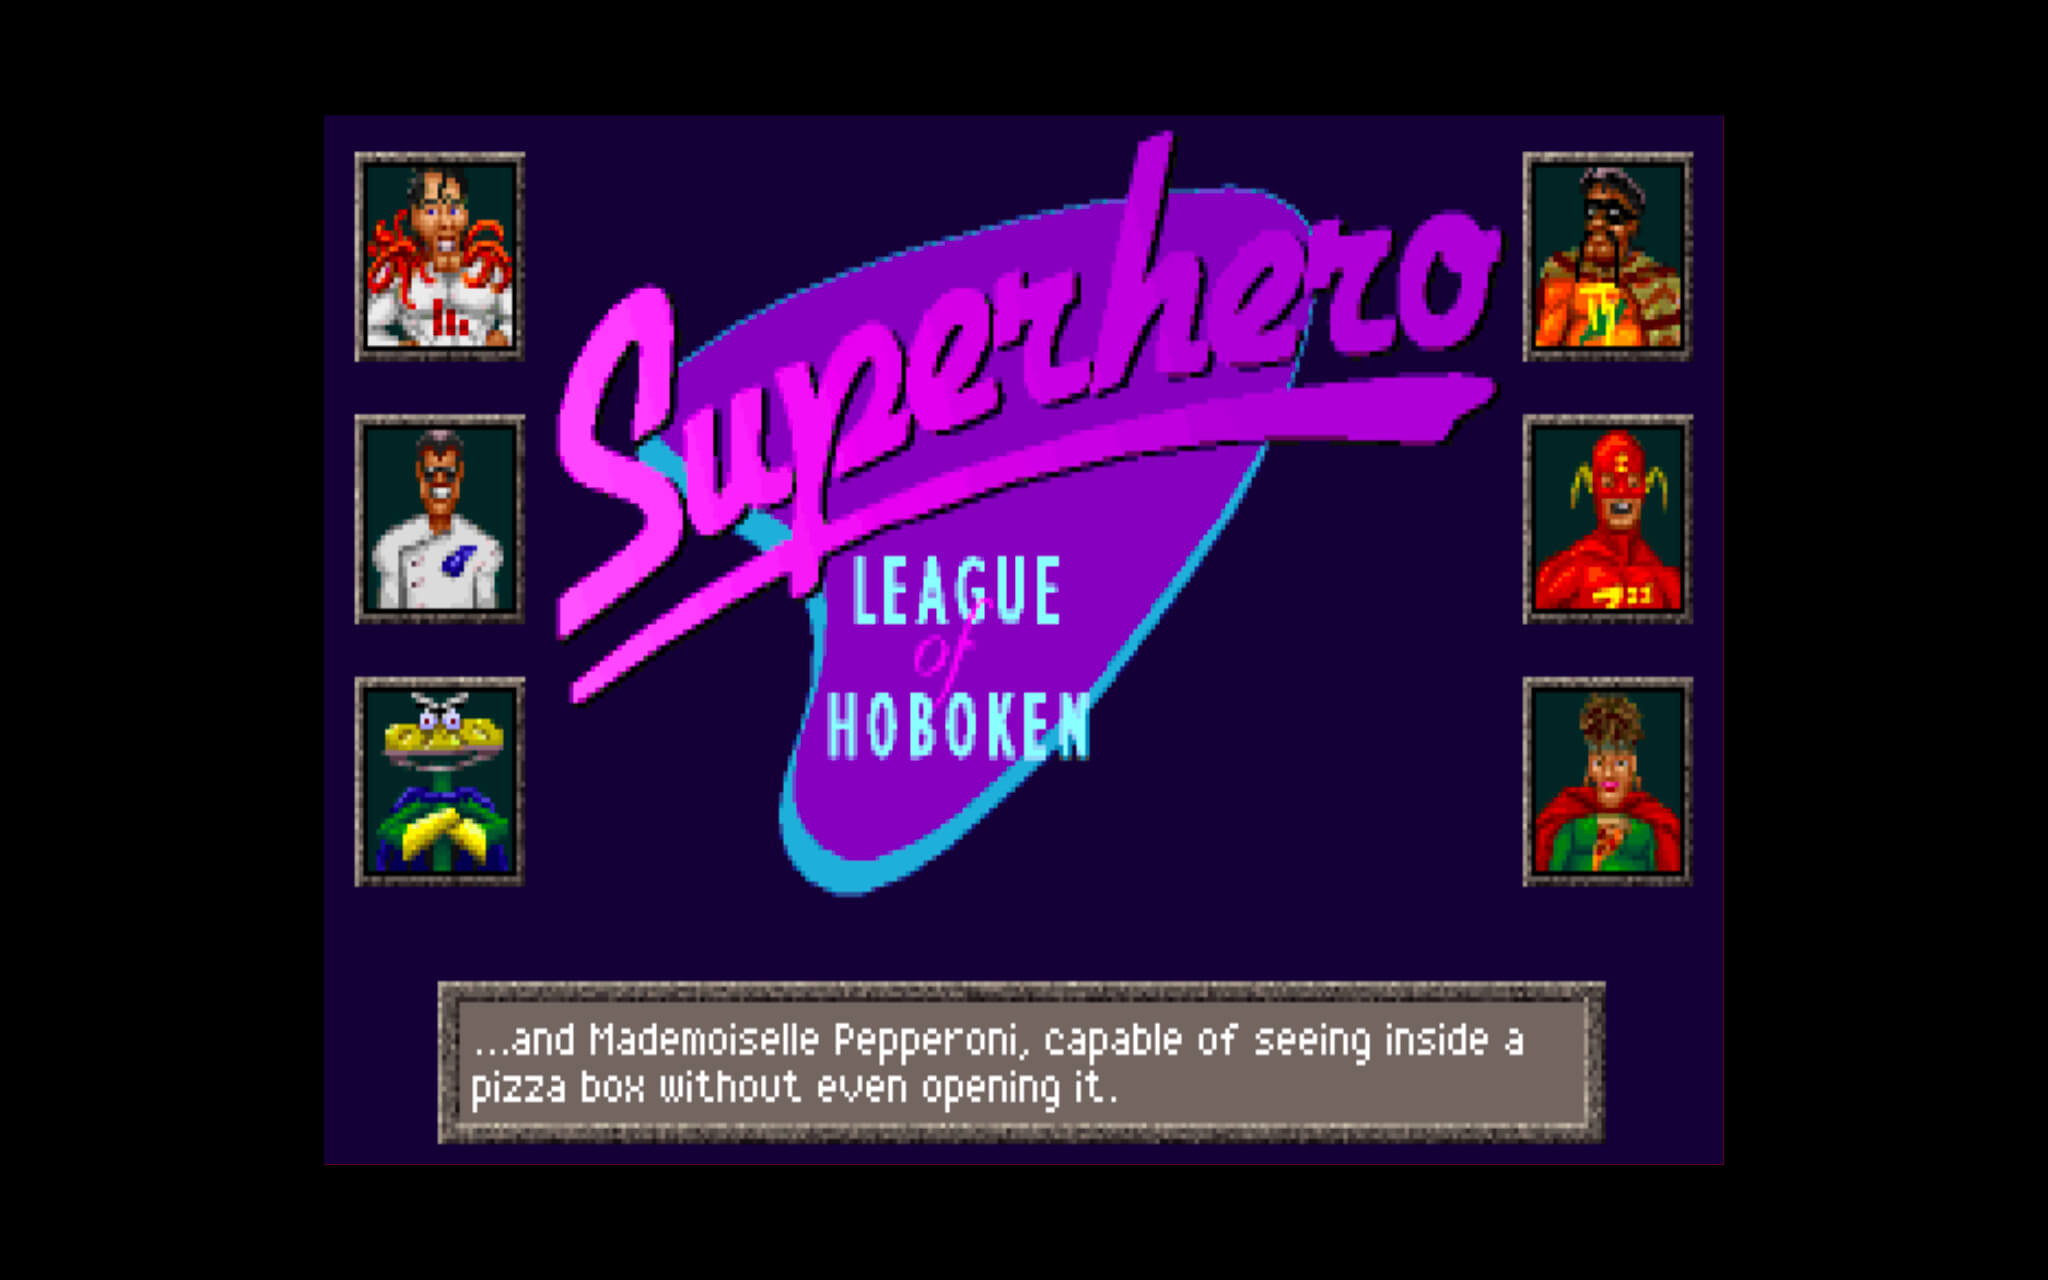 霍博肯超级英雄联盟 for Mac v1.1(A) Superhero League of Hoboken 英文原生版 苹果电脑